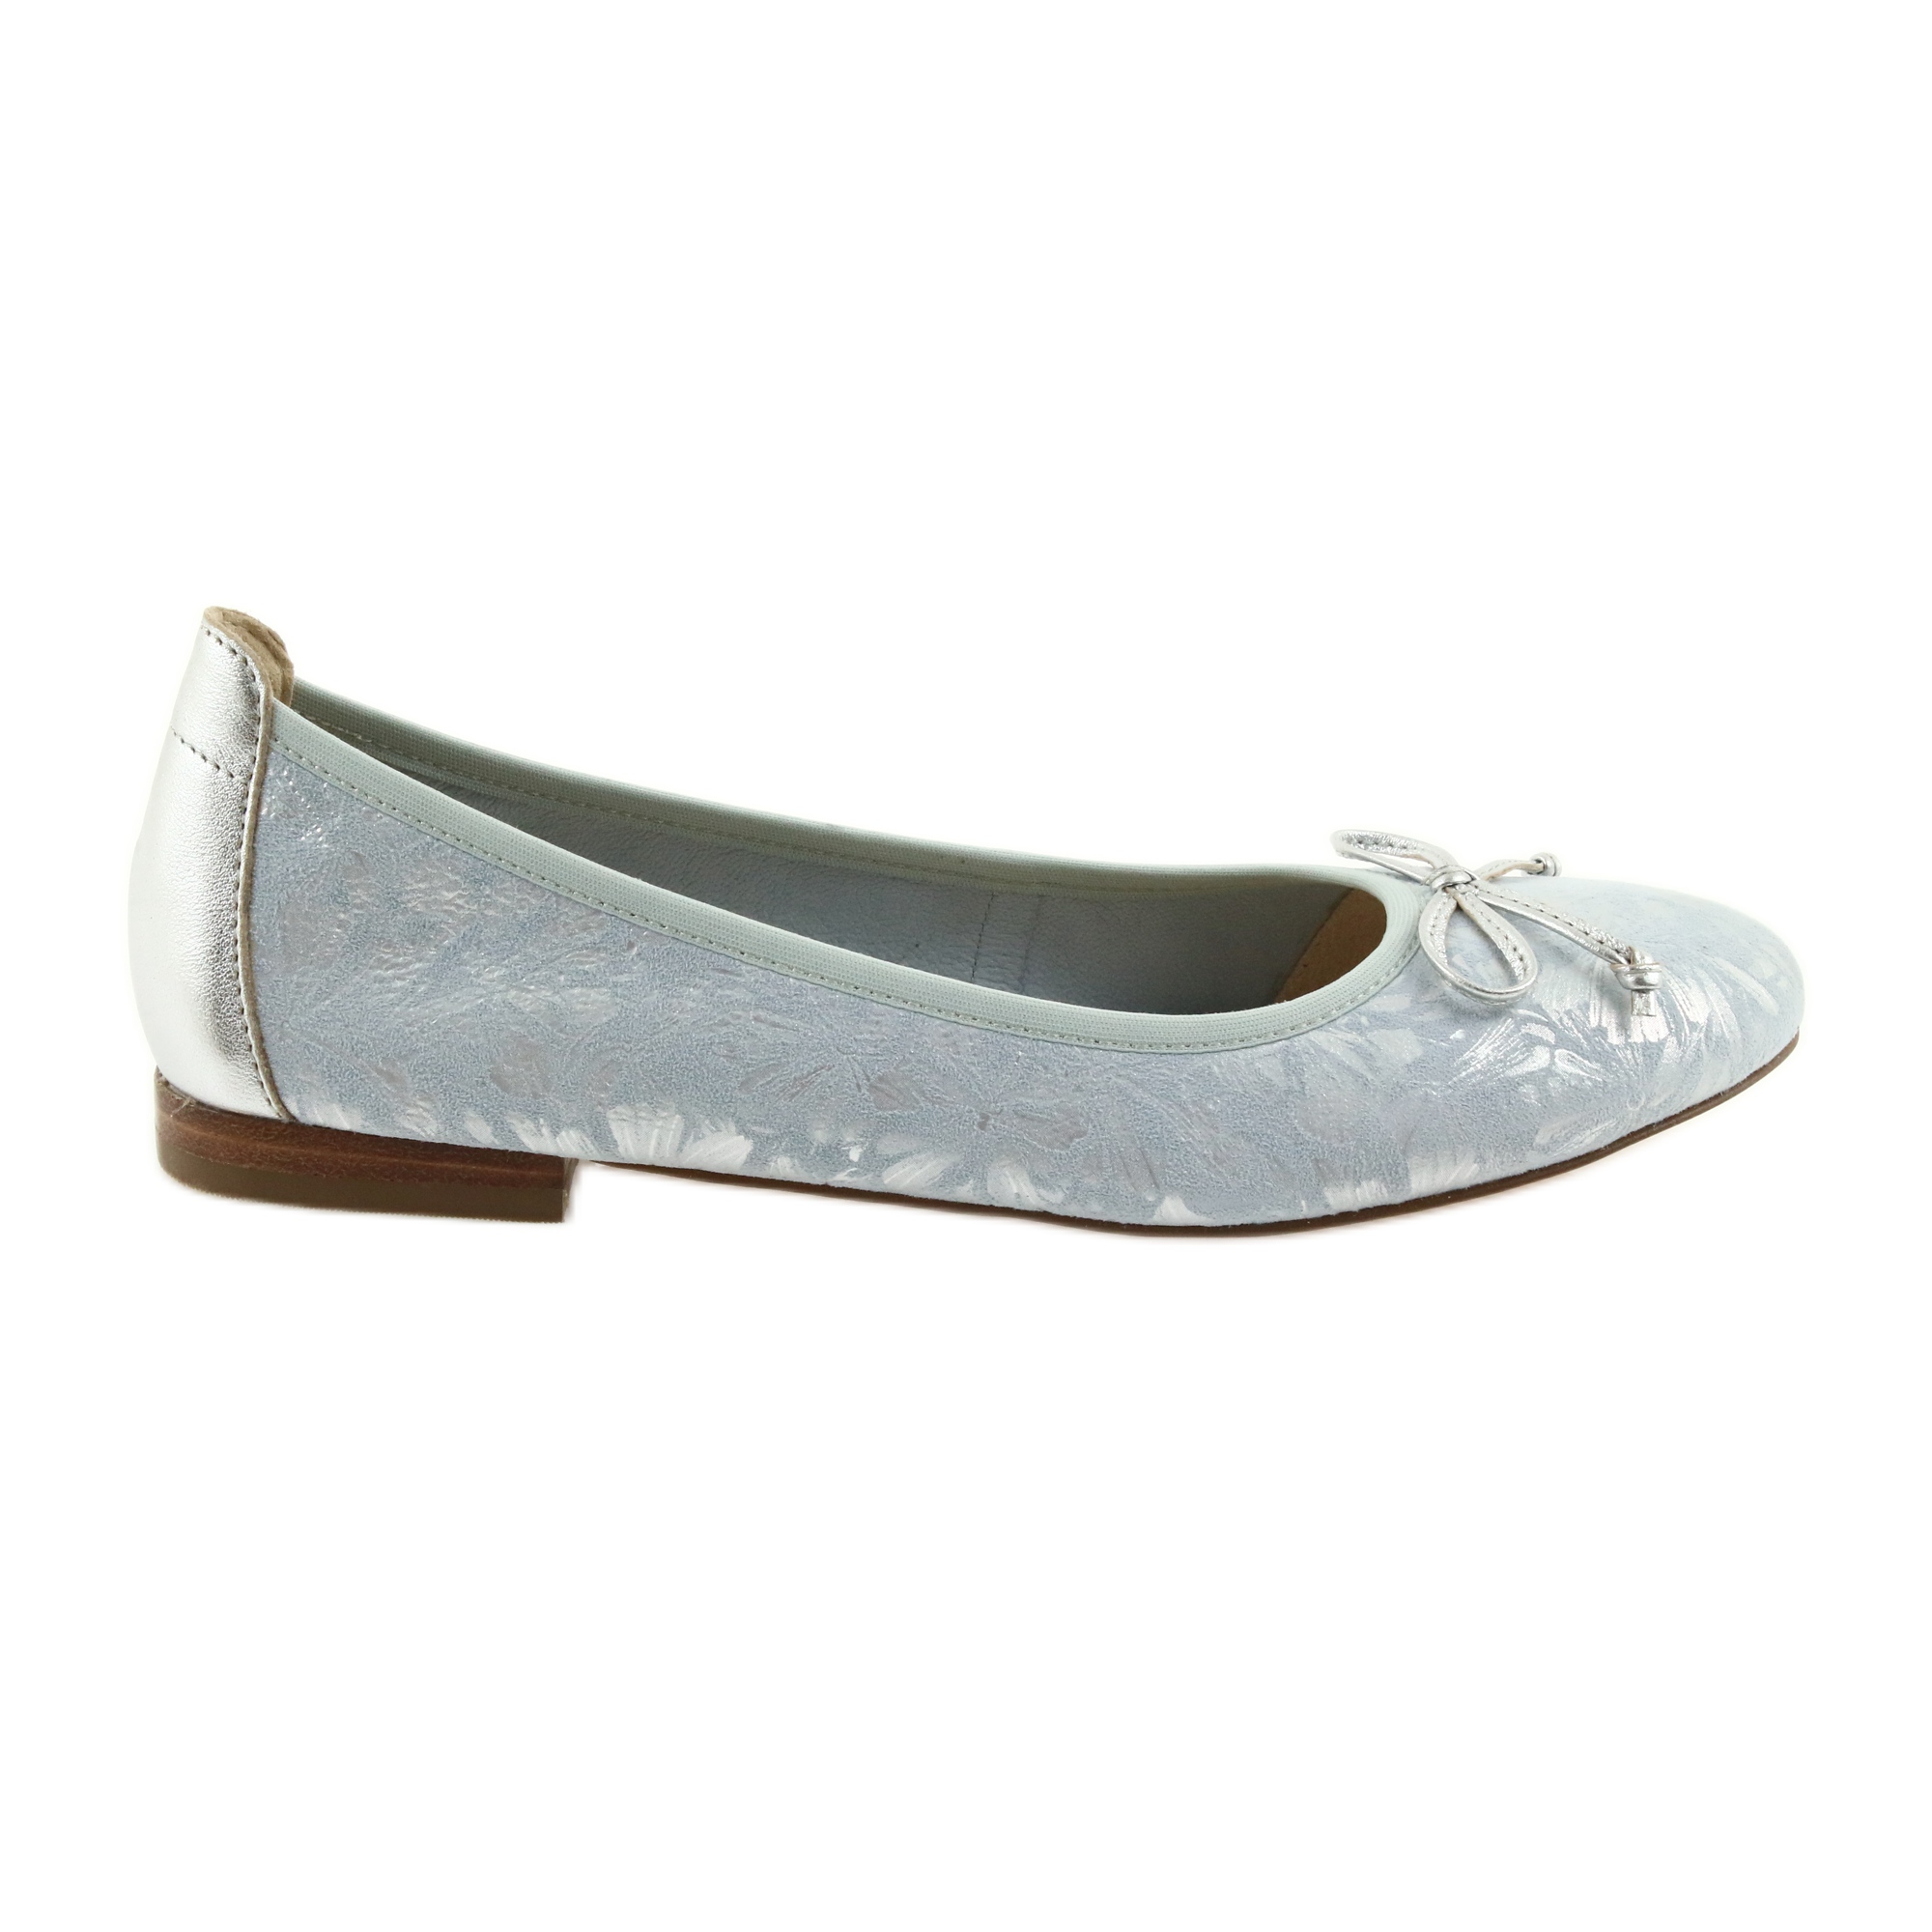 Bærbar nedenunder effektivitet Caprice ballerinas sko til kvinder 22102 blå grå - KeeShoes